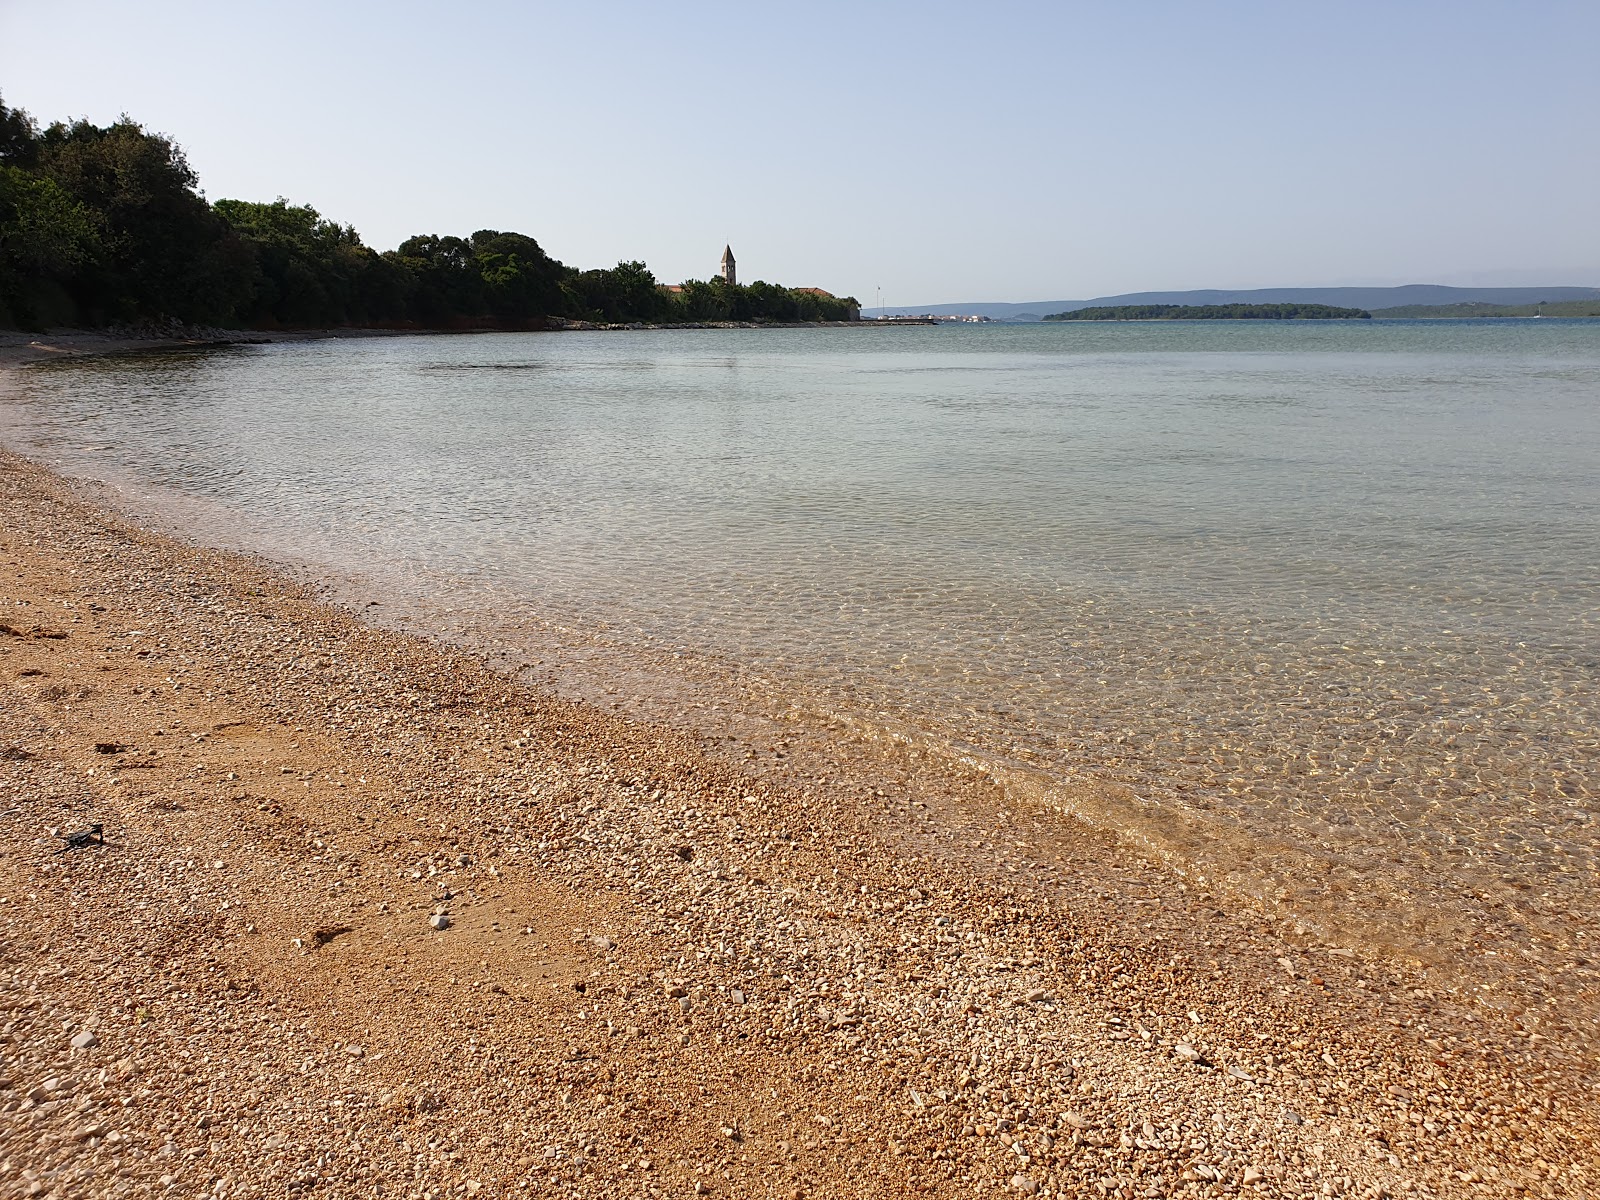 Fotografie cu Tratica beach cu o suprafață de apă verde deschis